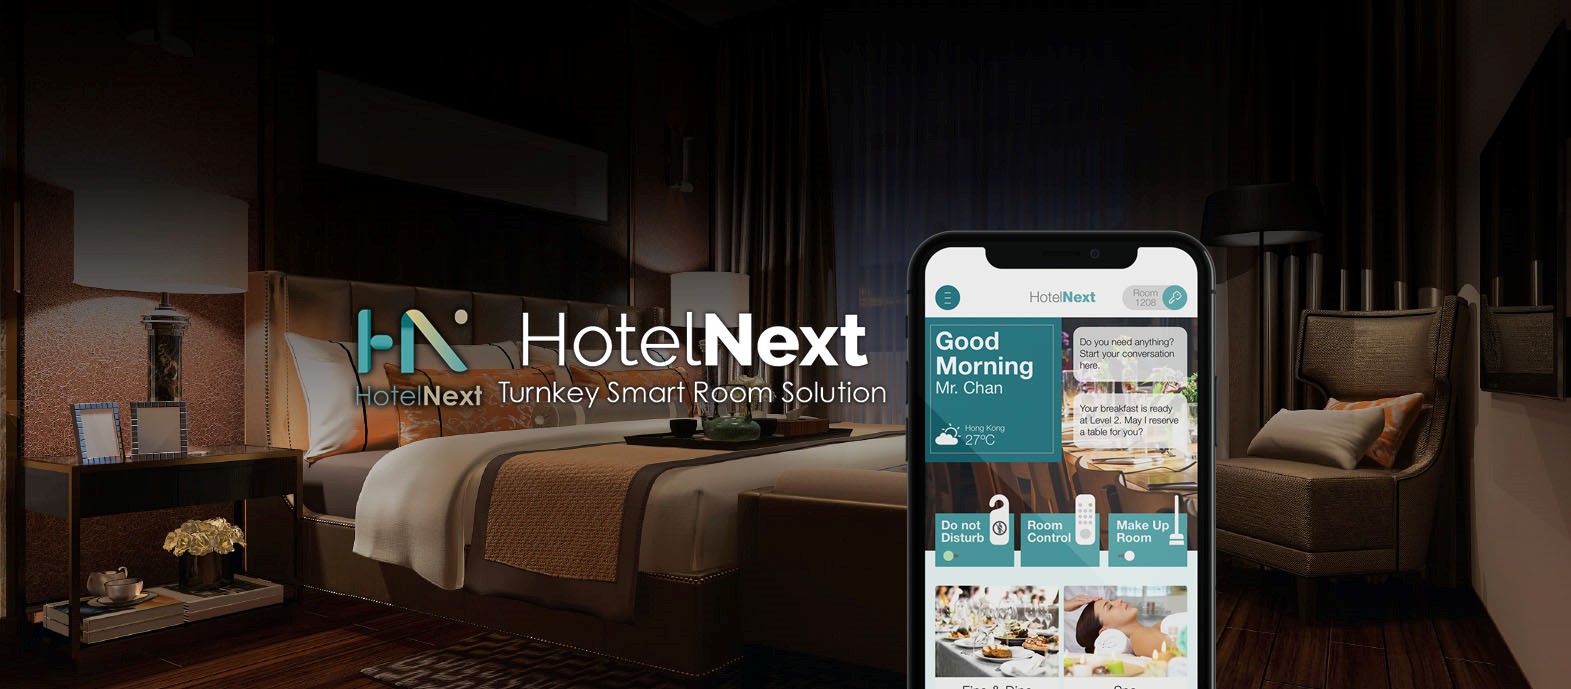 HotelNext